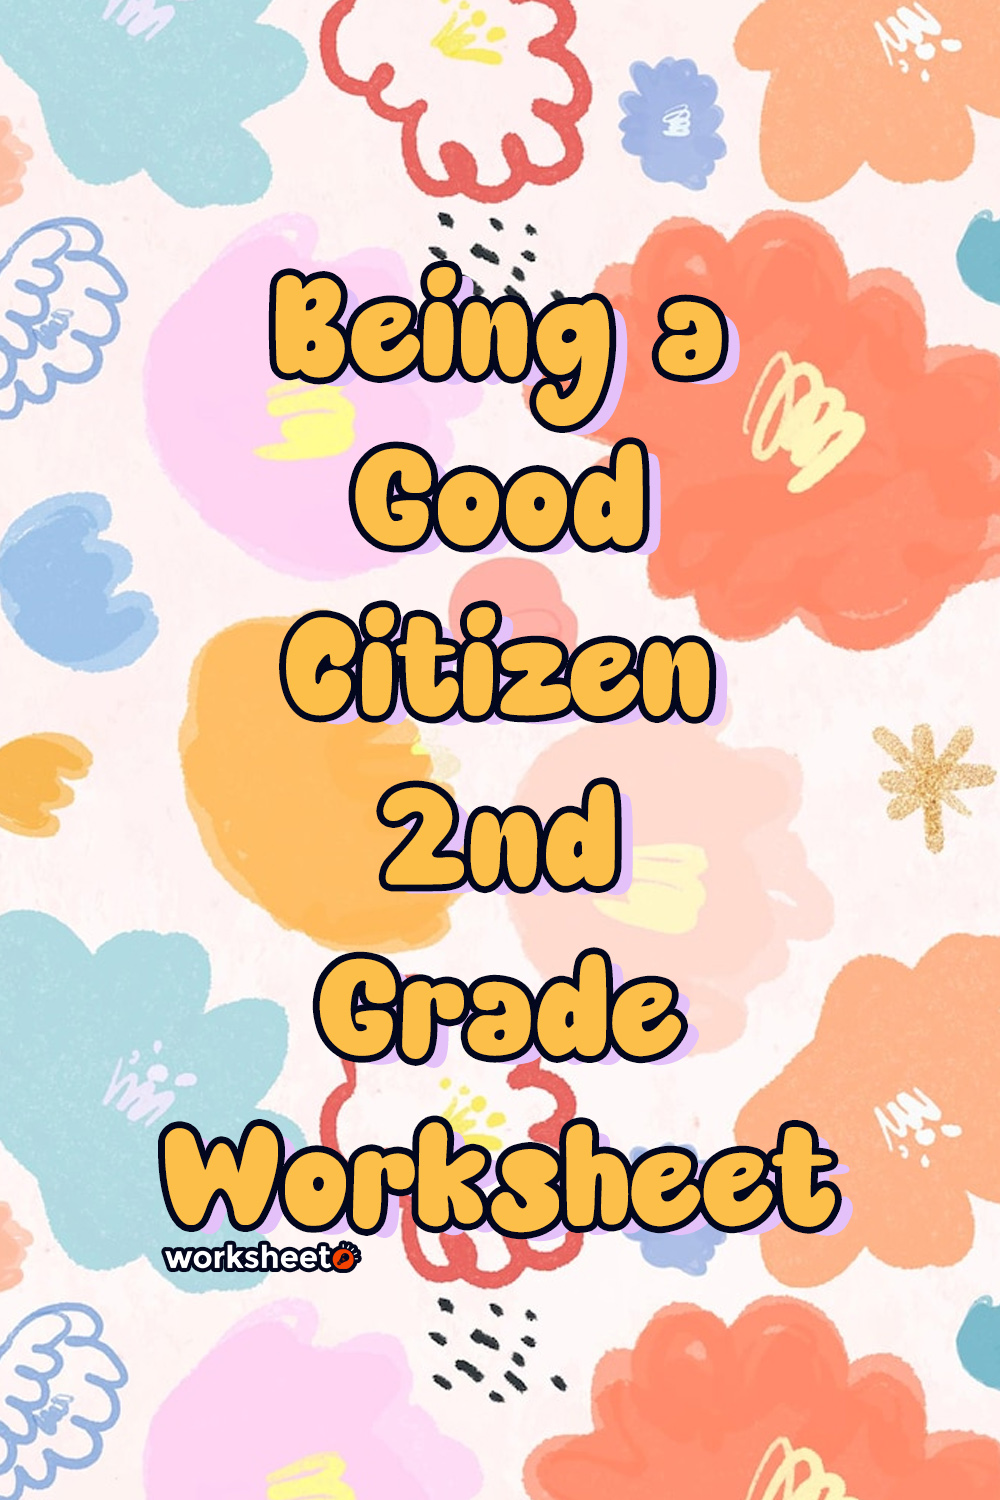 Being a Good Citizen 2nd Grade Worksheet